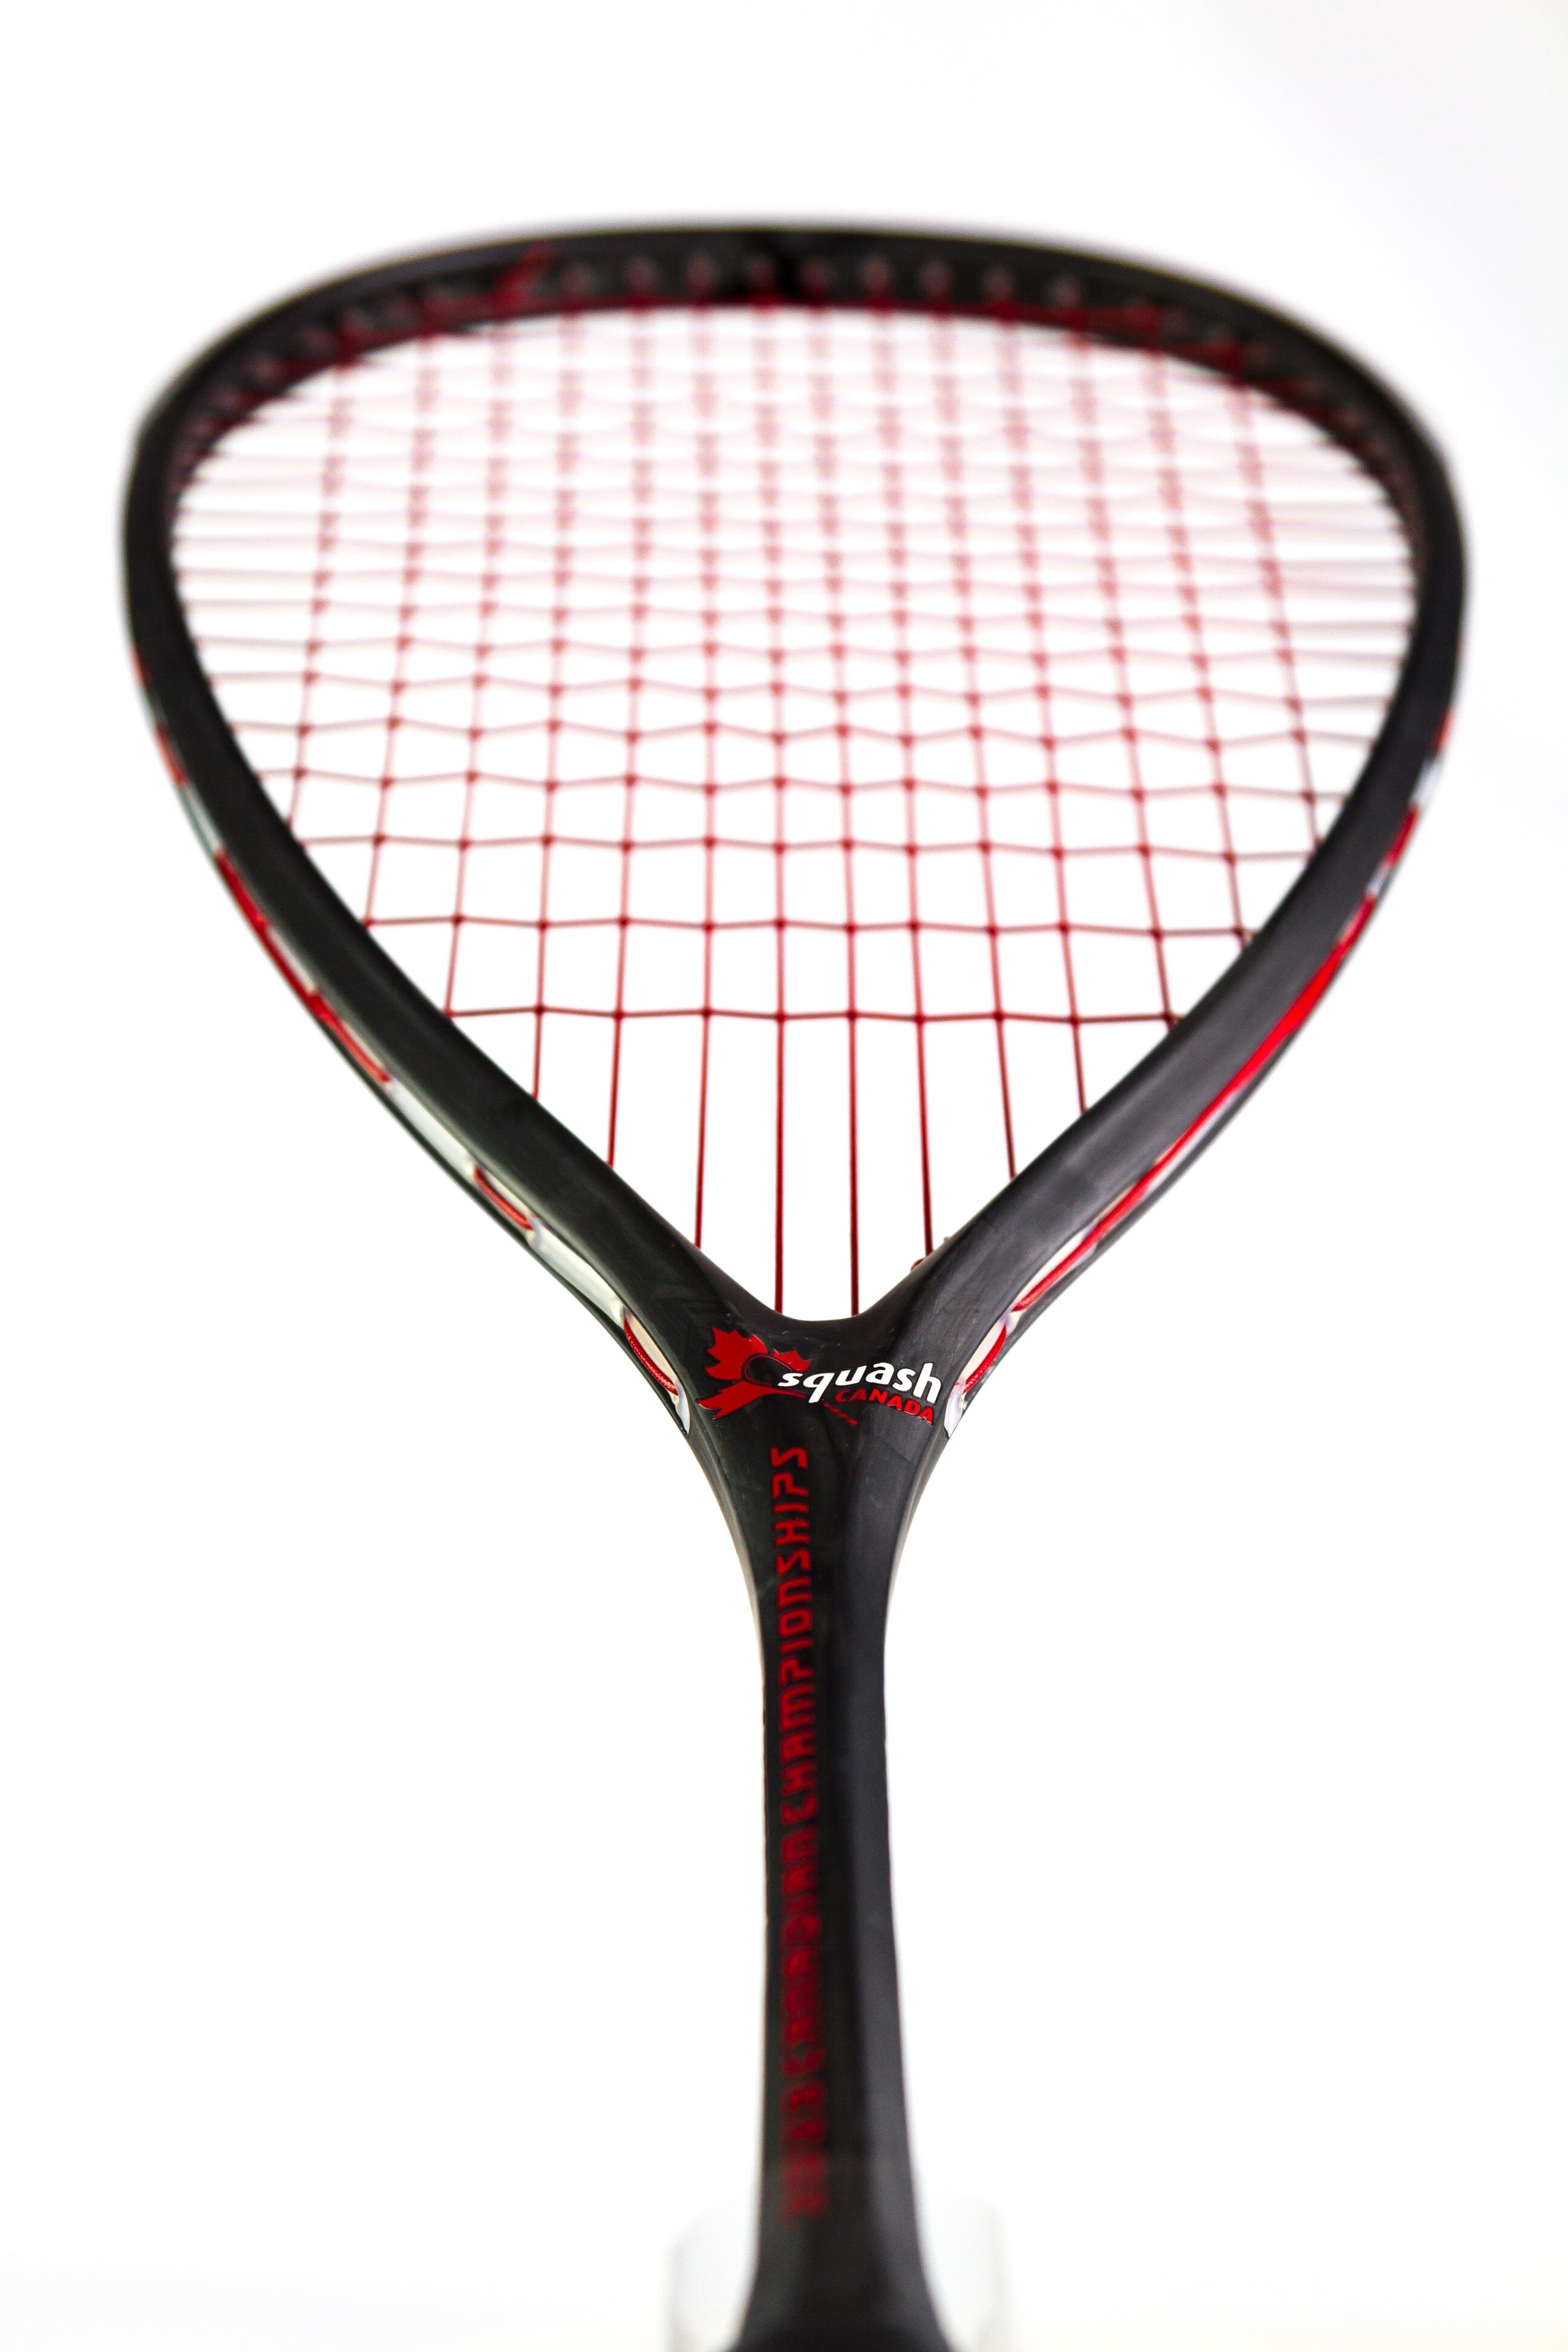 Nouveautés Squash, les raquettes Dunlop et Tecnifibre - Protennis